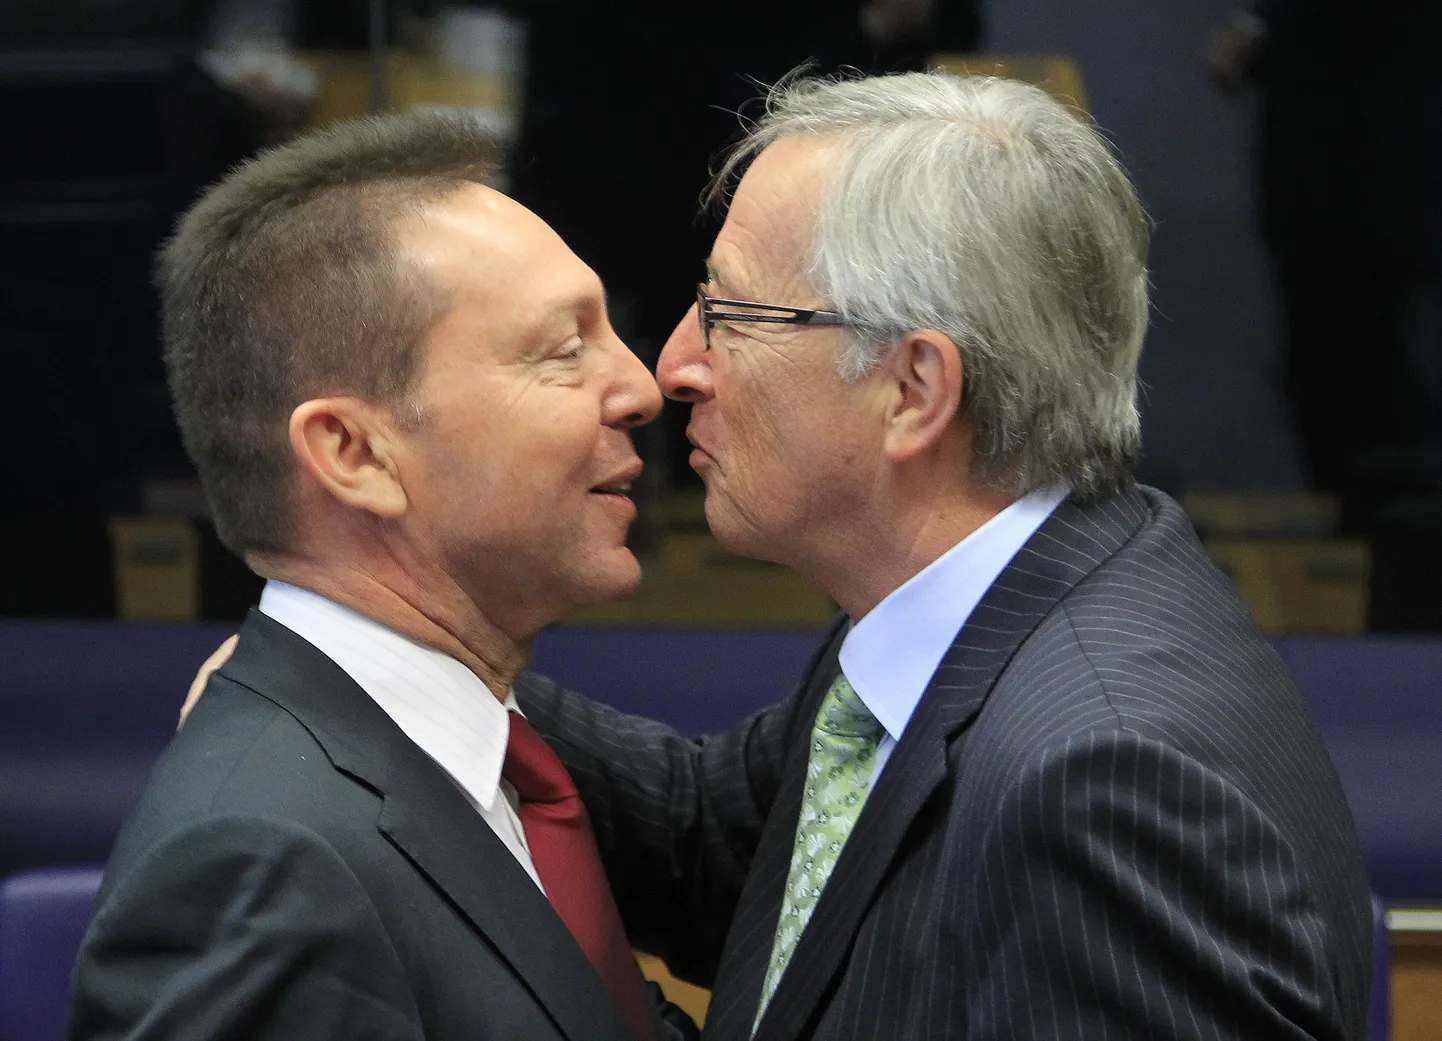 Kreeka rahandusminister Yannis Stournaras ja Eurogrupi juht Jean-Claude Juncker eile Luxembourgis teineteist tervitamas.